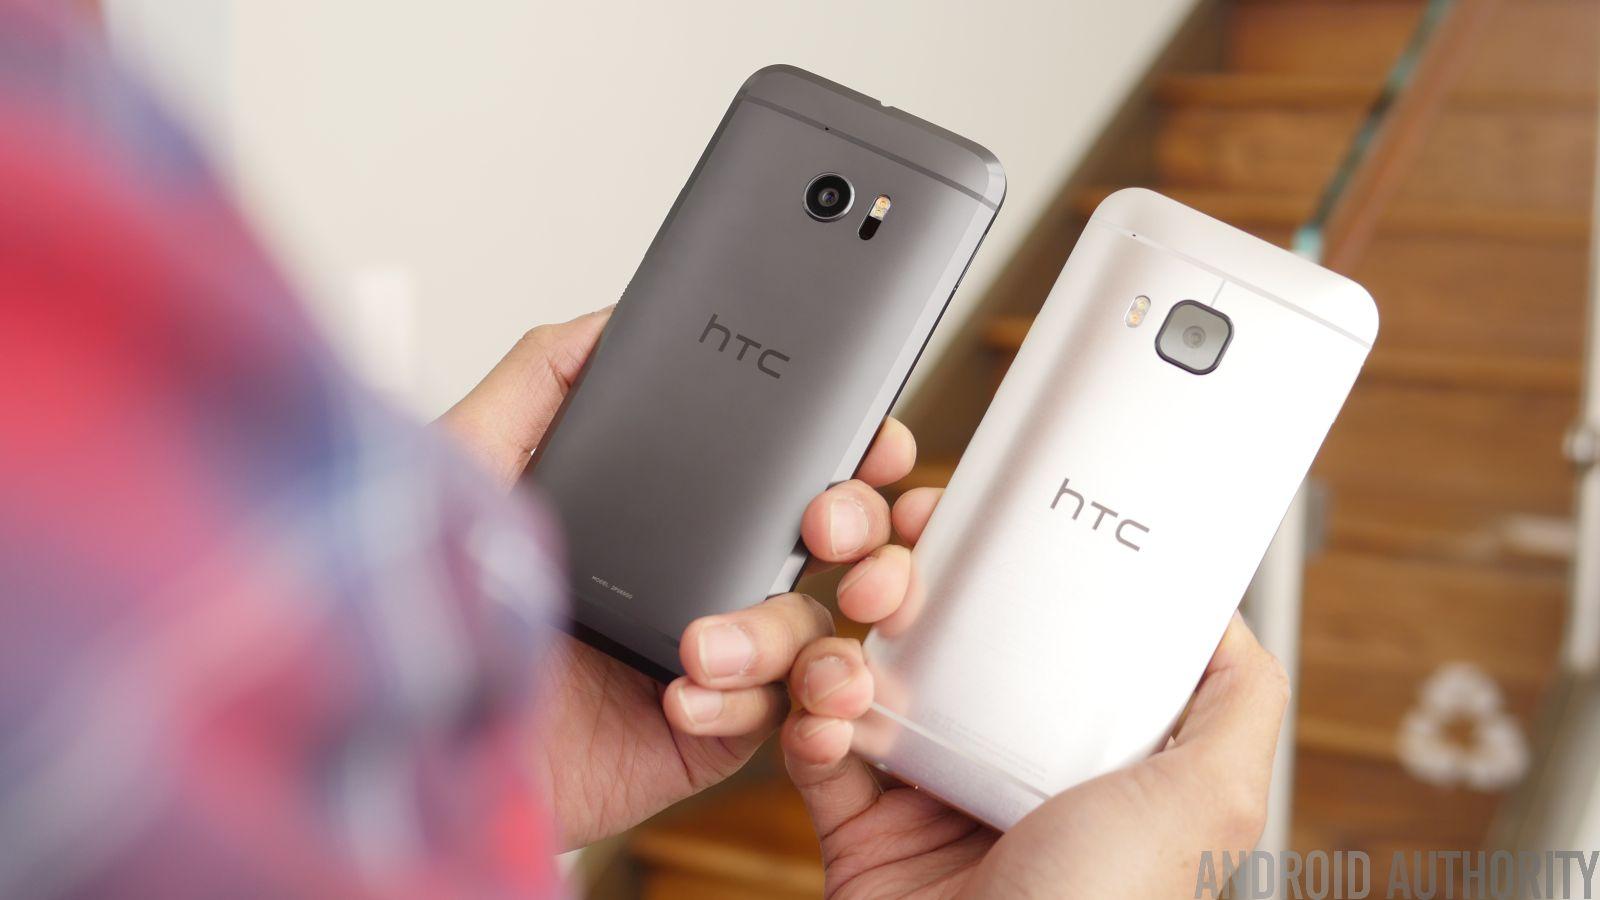 fax hemel voor HTC 10 vs HTCOne M9 quick look - Android Authority